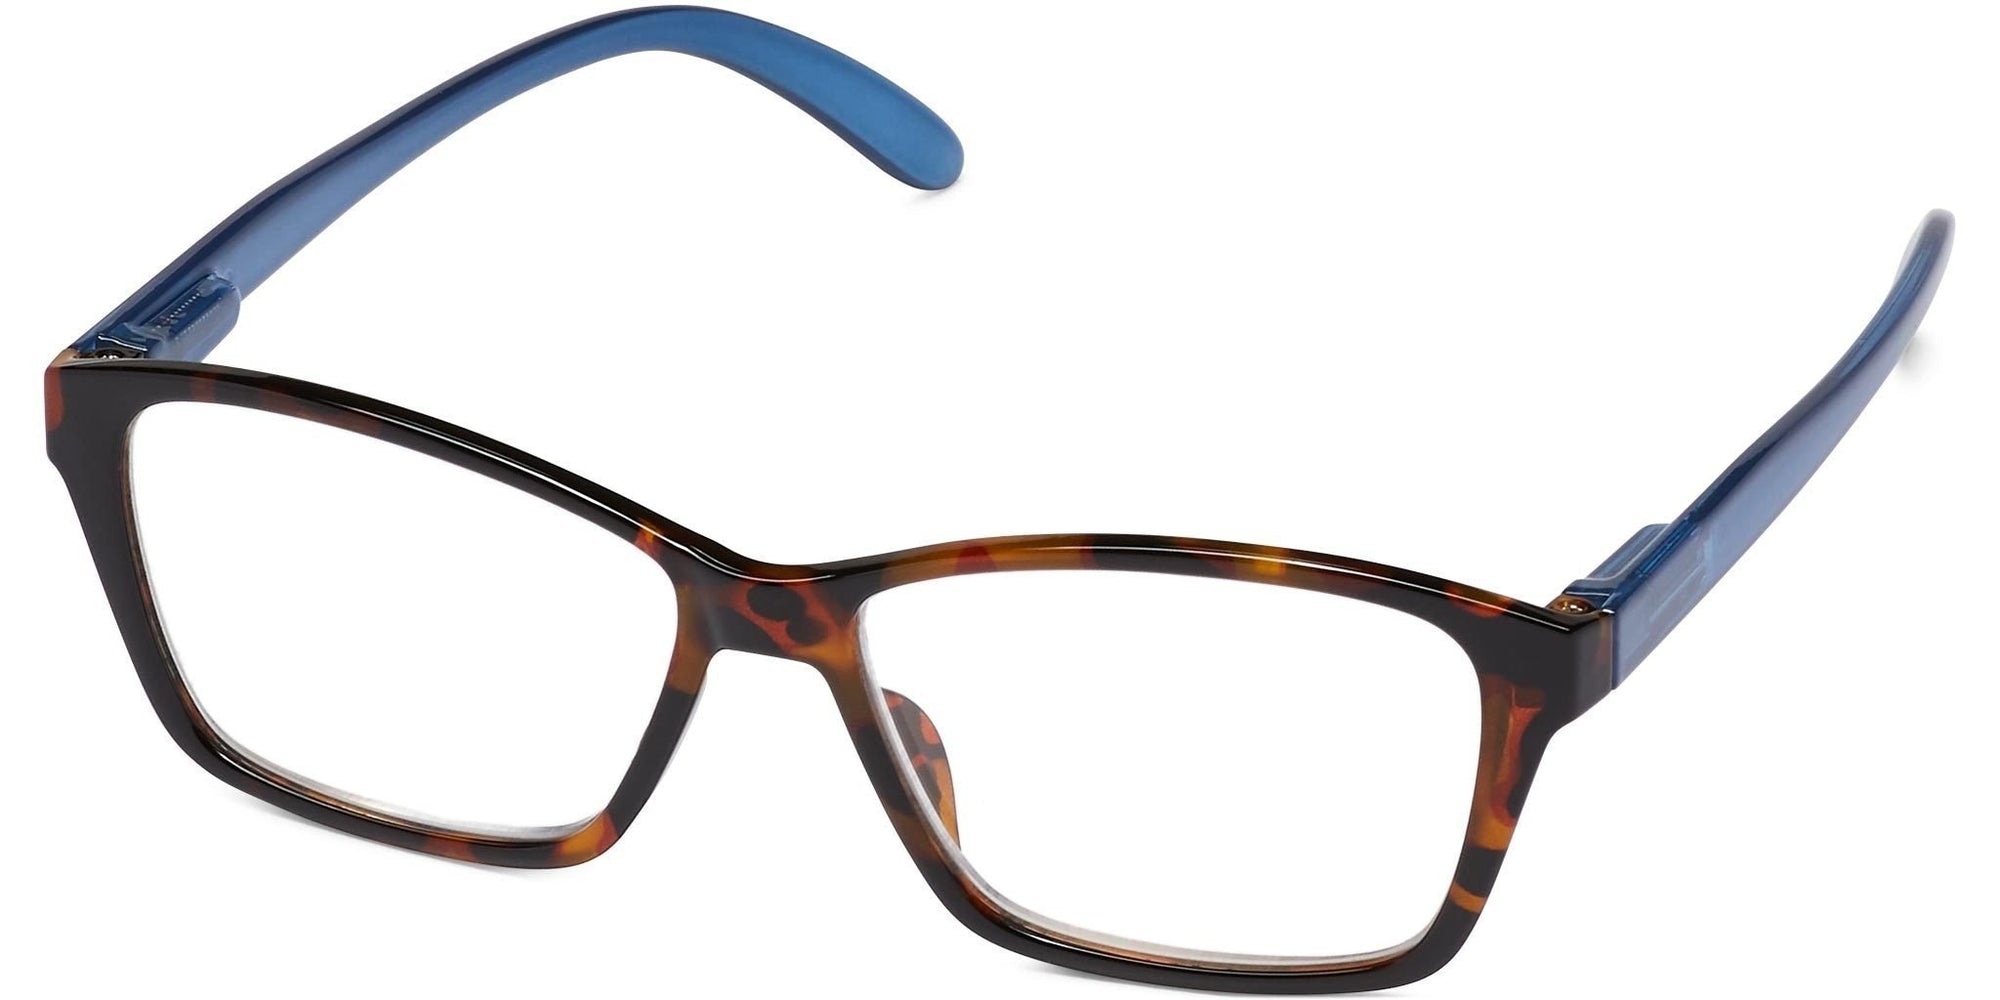 Cativa - Tortoise / Blue / 1.25 - Reading Glasses